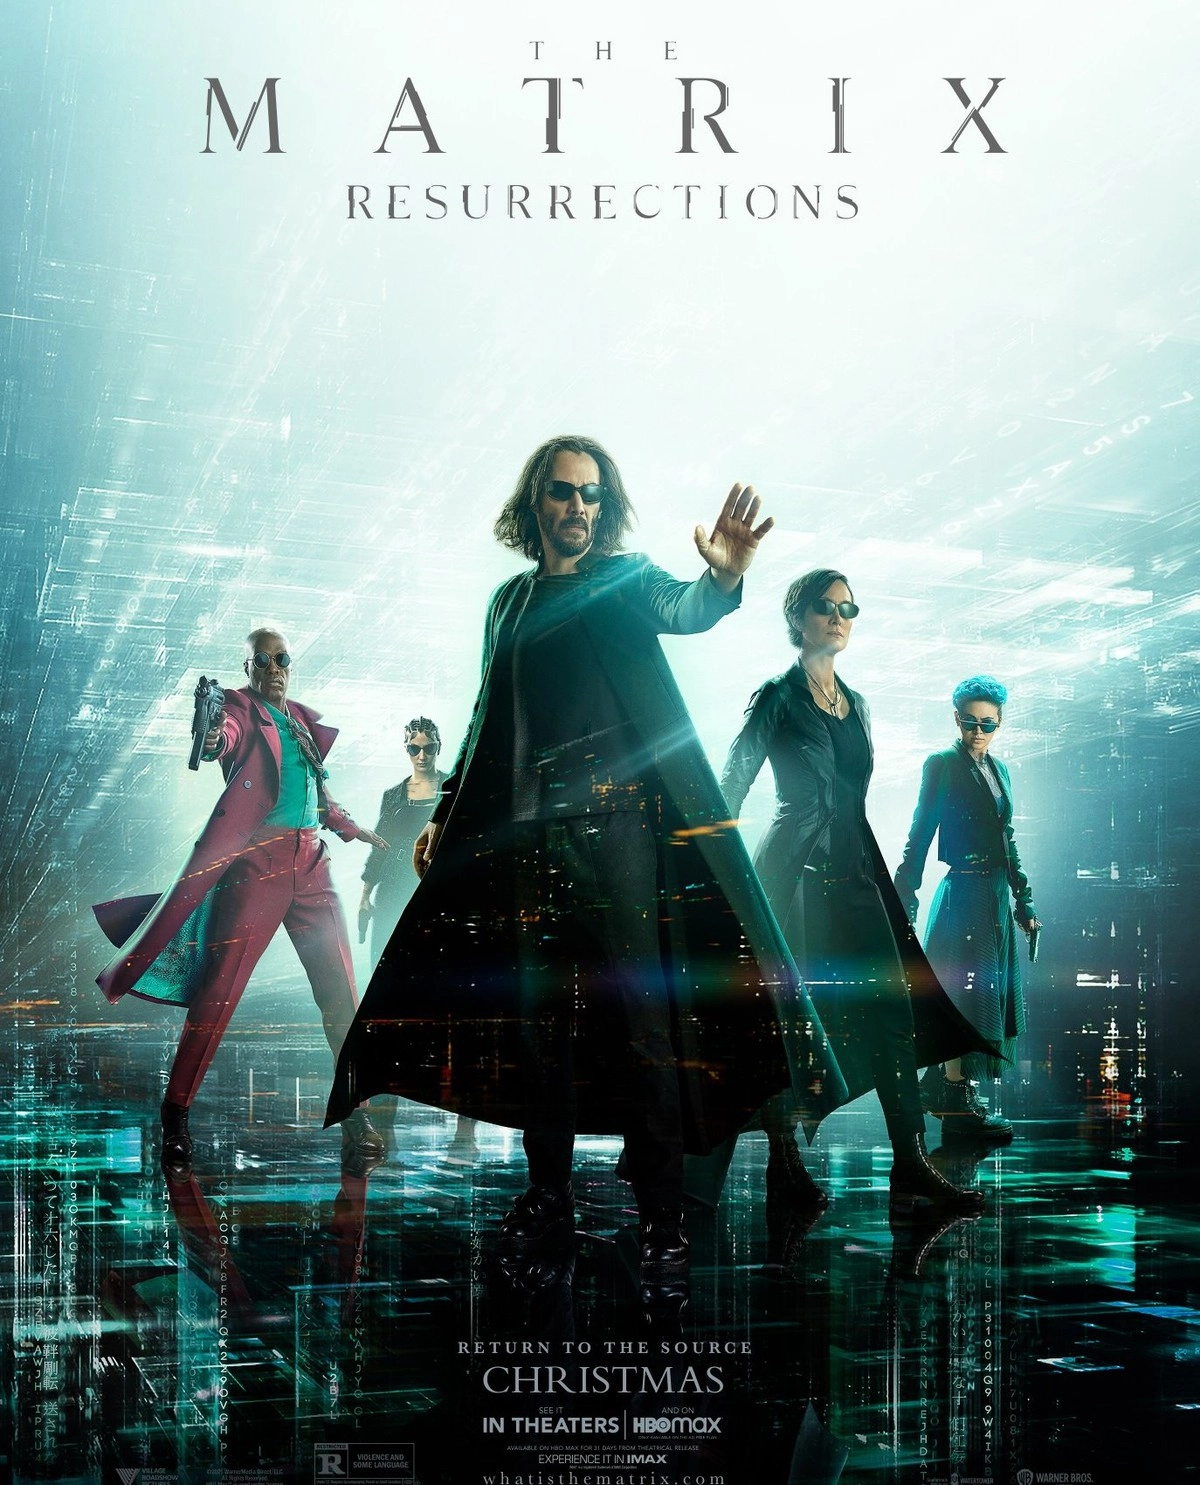 Тот самый постер со всеми главными героями. В российском прокате фильм получил название "Матрица: Воскрешение".